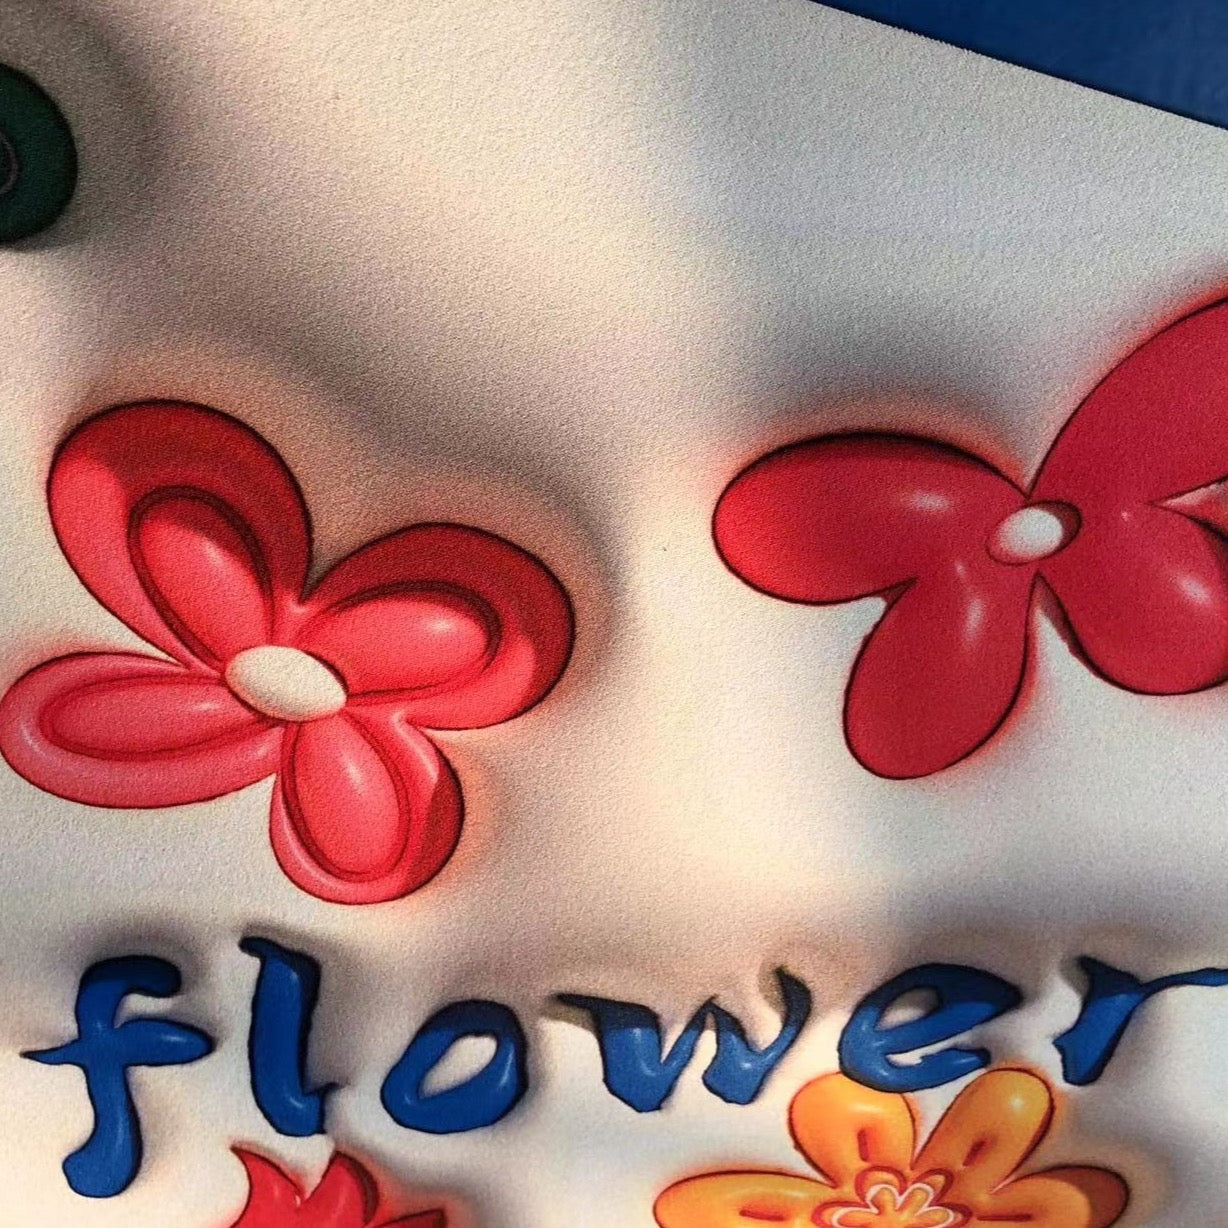 Szybkoschnący, chłonny, antypoślizgowy dywanik łazienkowy z motywem kwiatów 3D